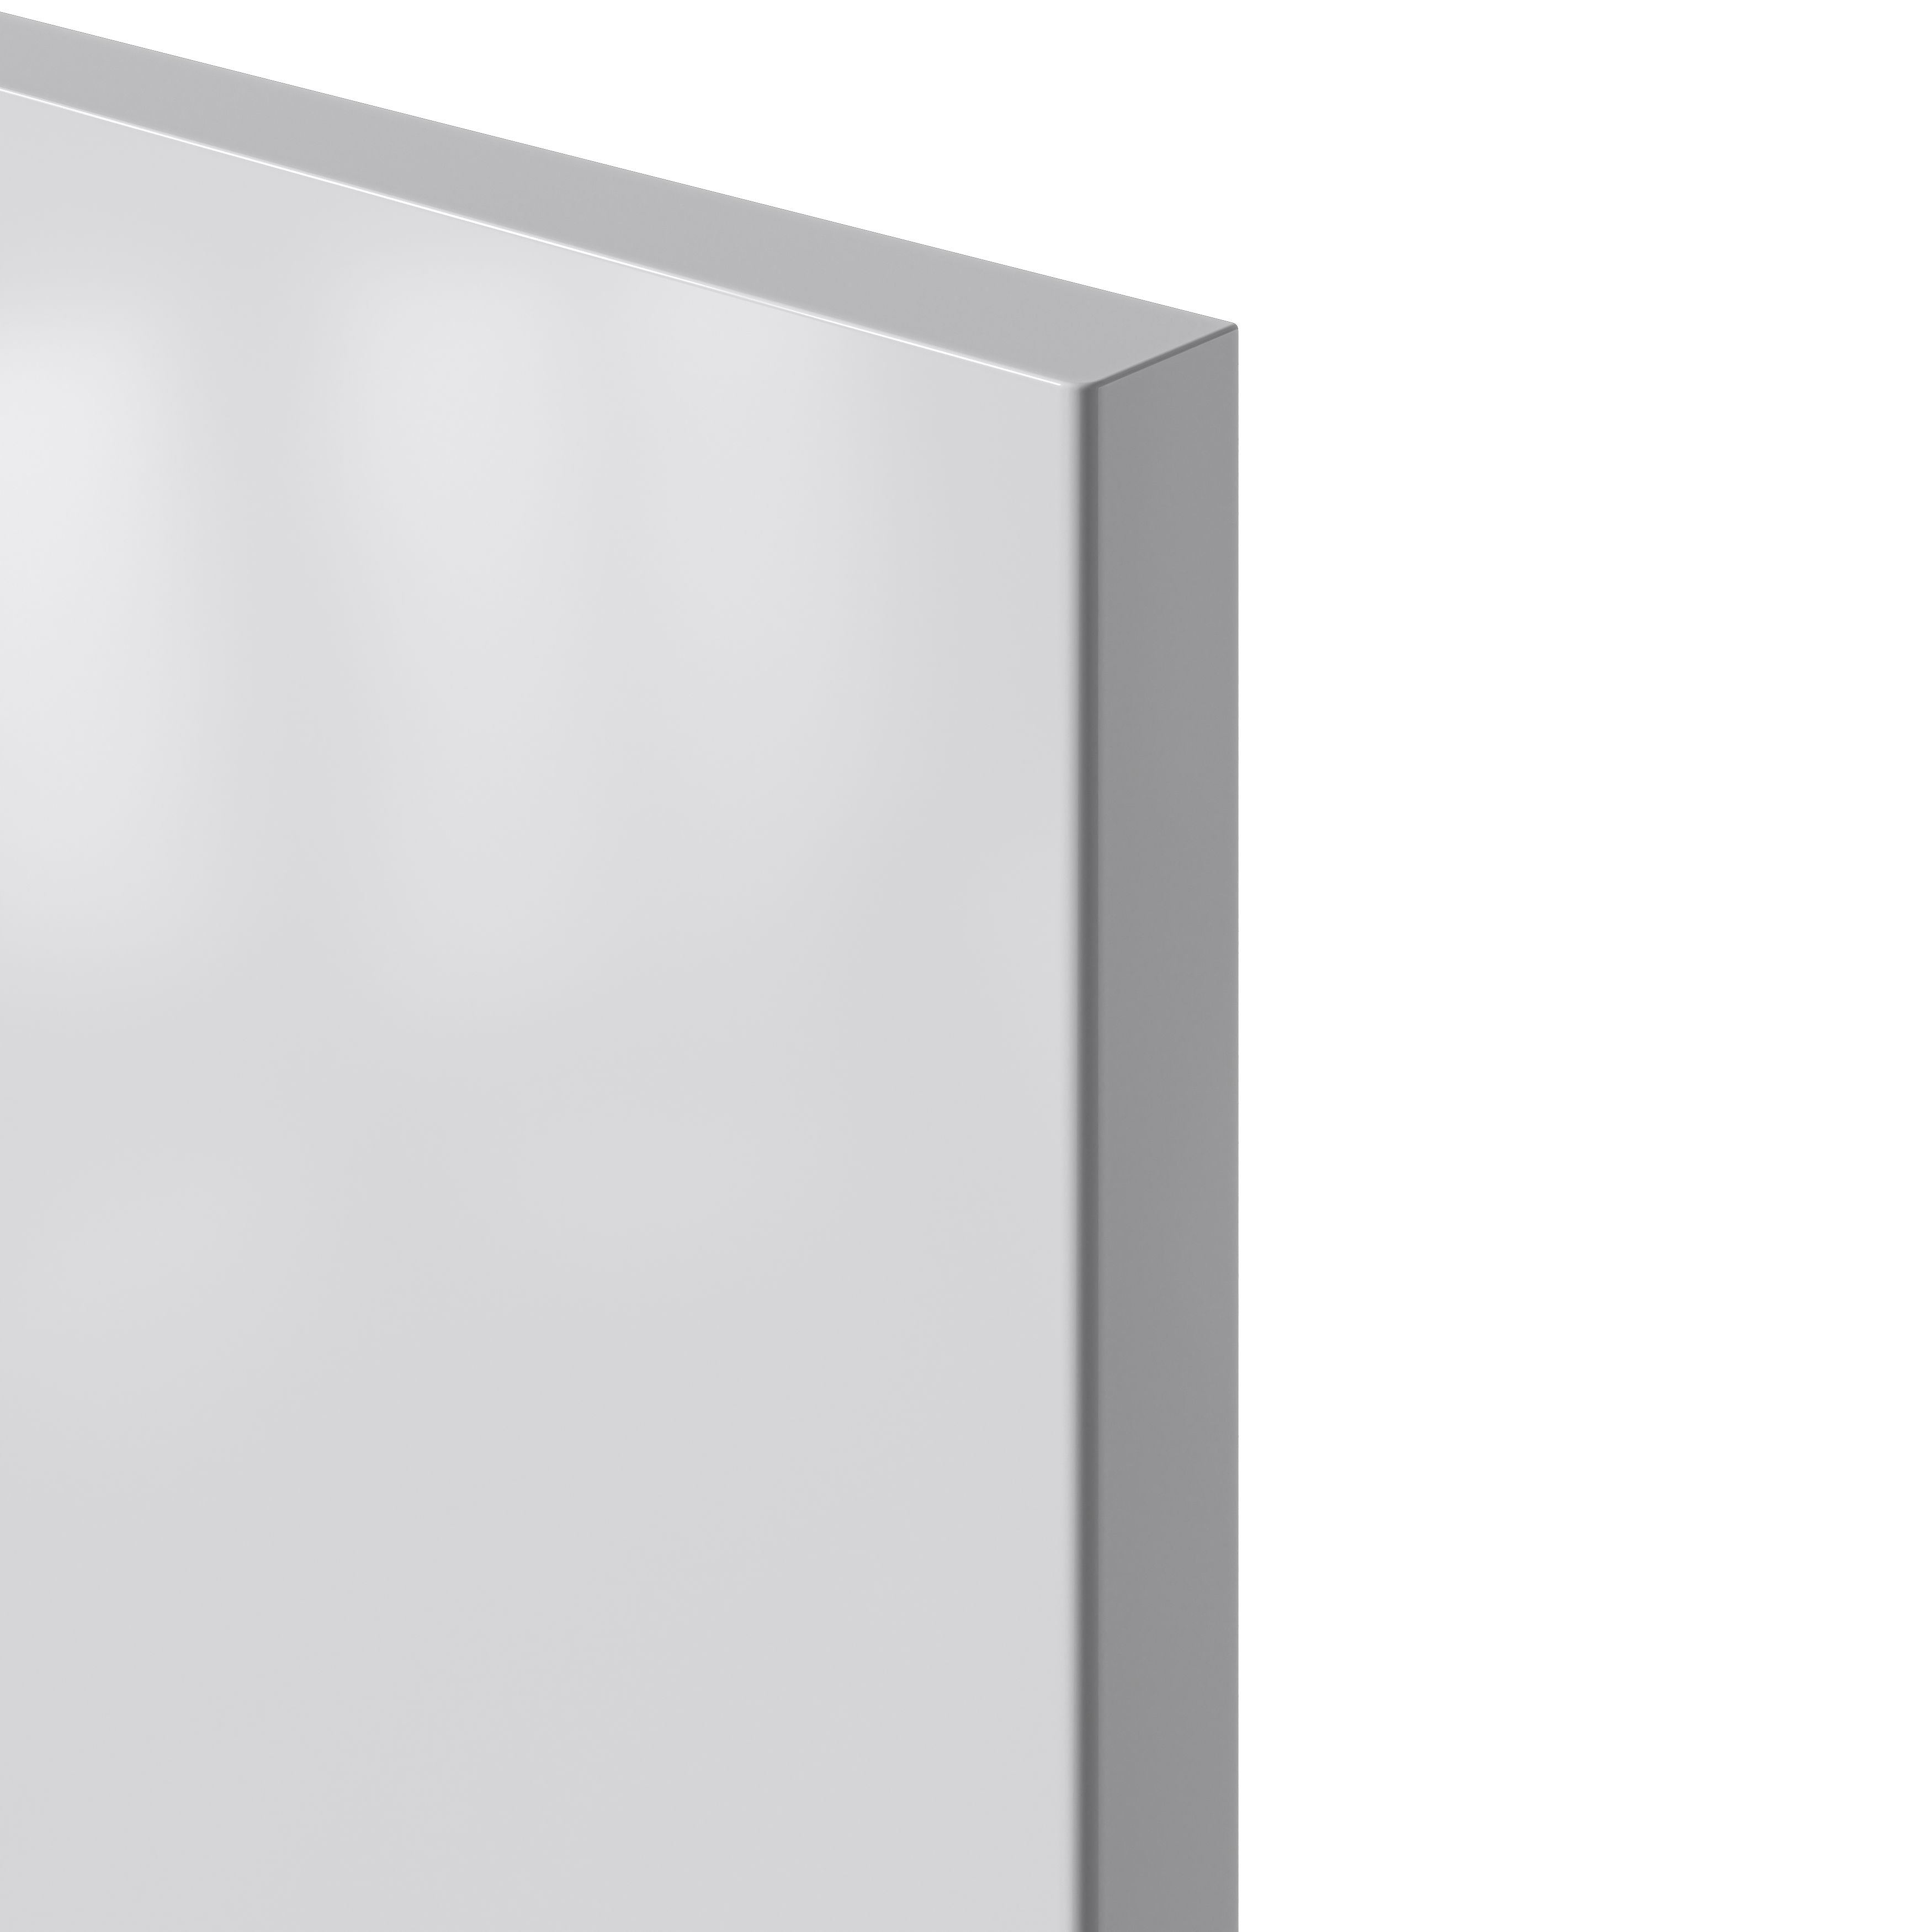 GoodHome Stevia Gloss grey slab Tall larder Cabinet door (W)600mm (H)1181mm (T)18mm